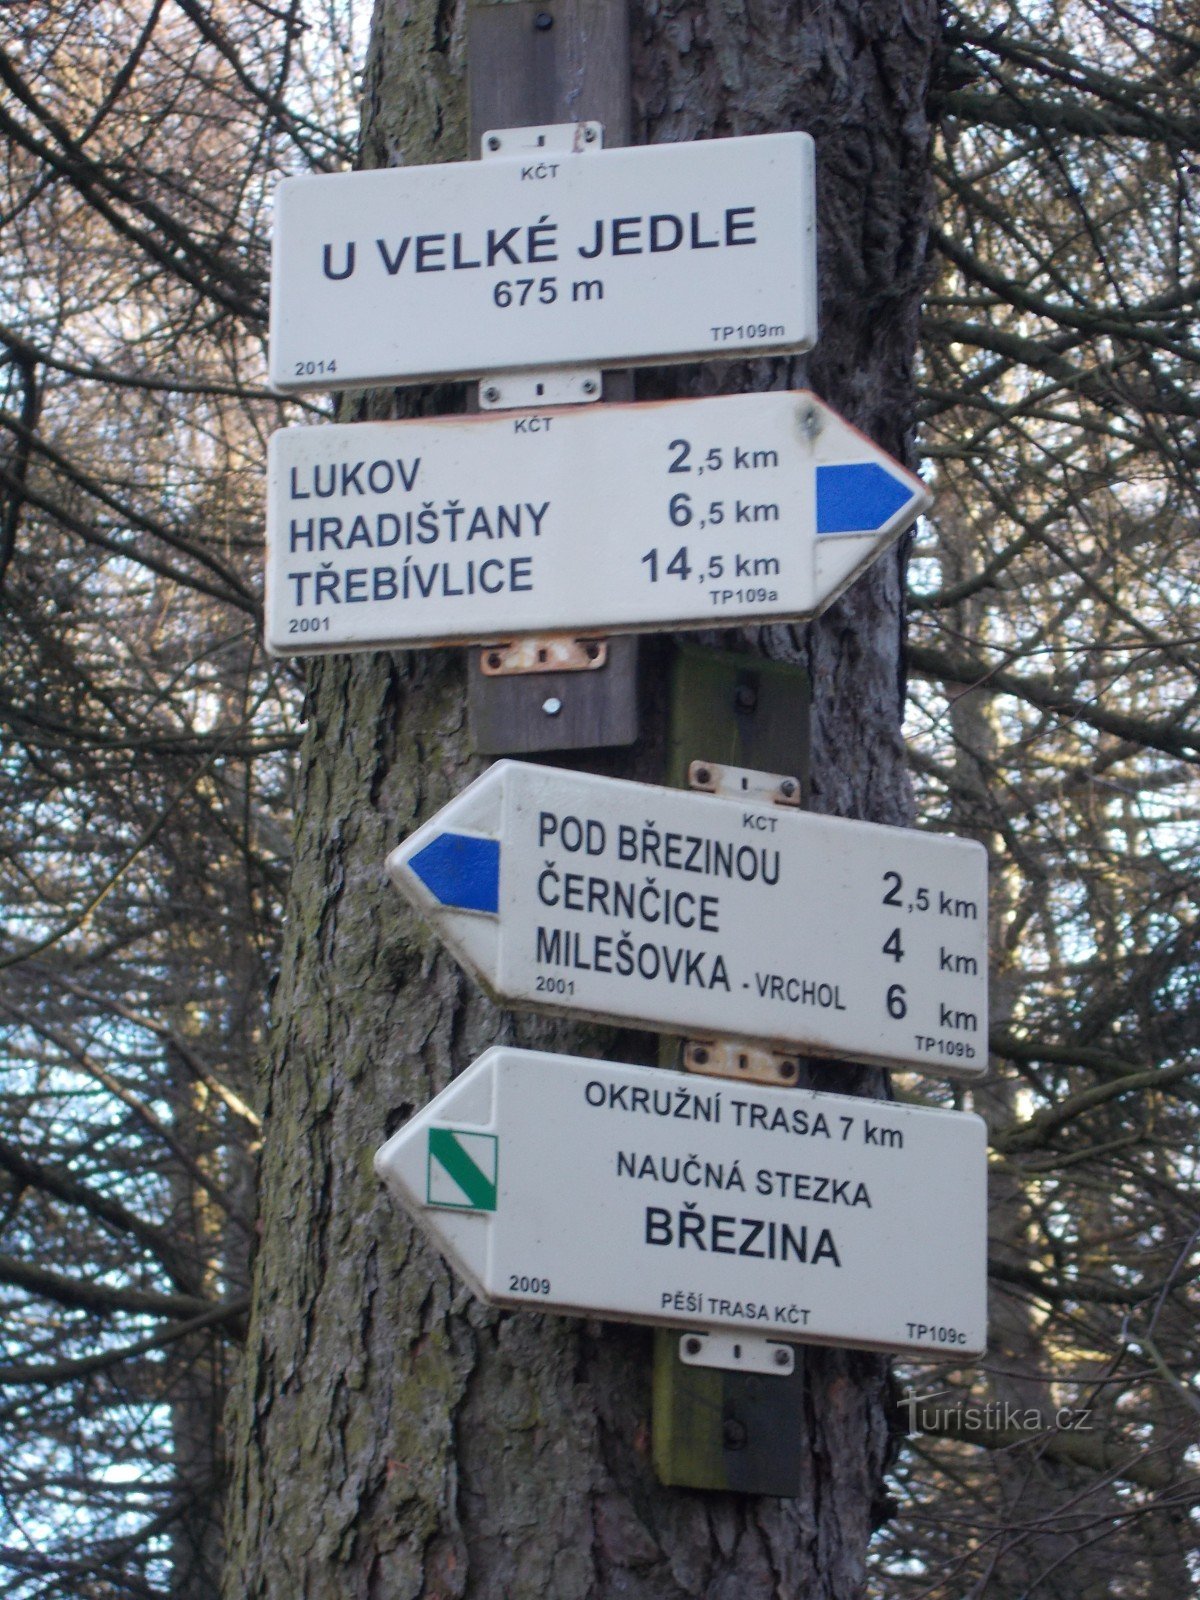 Biển chỉ dẫn tại Velká Jedle.